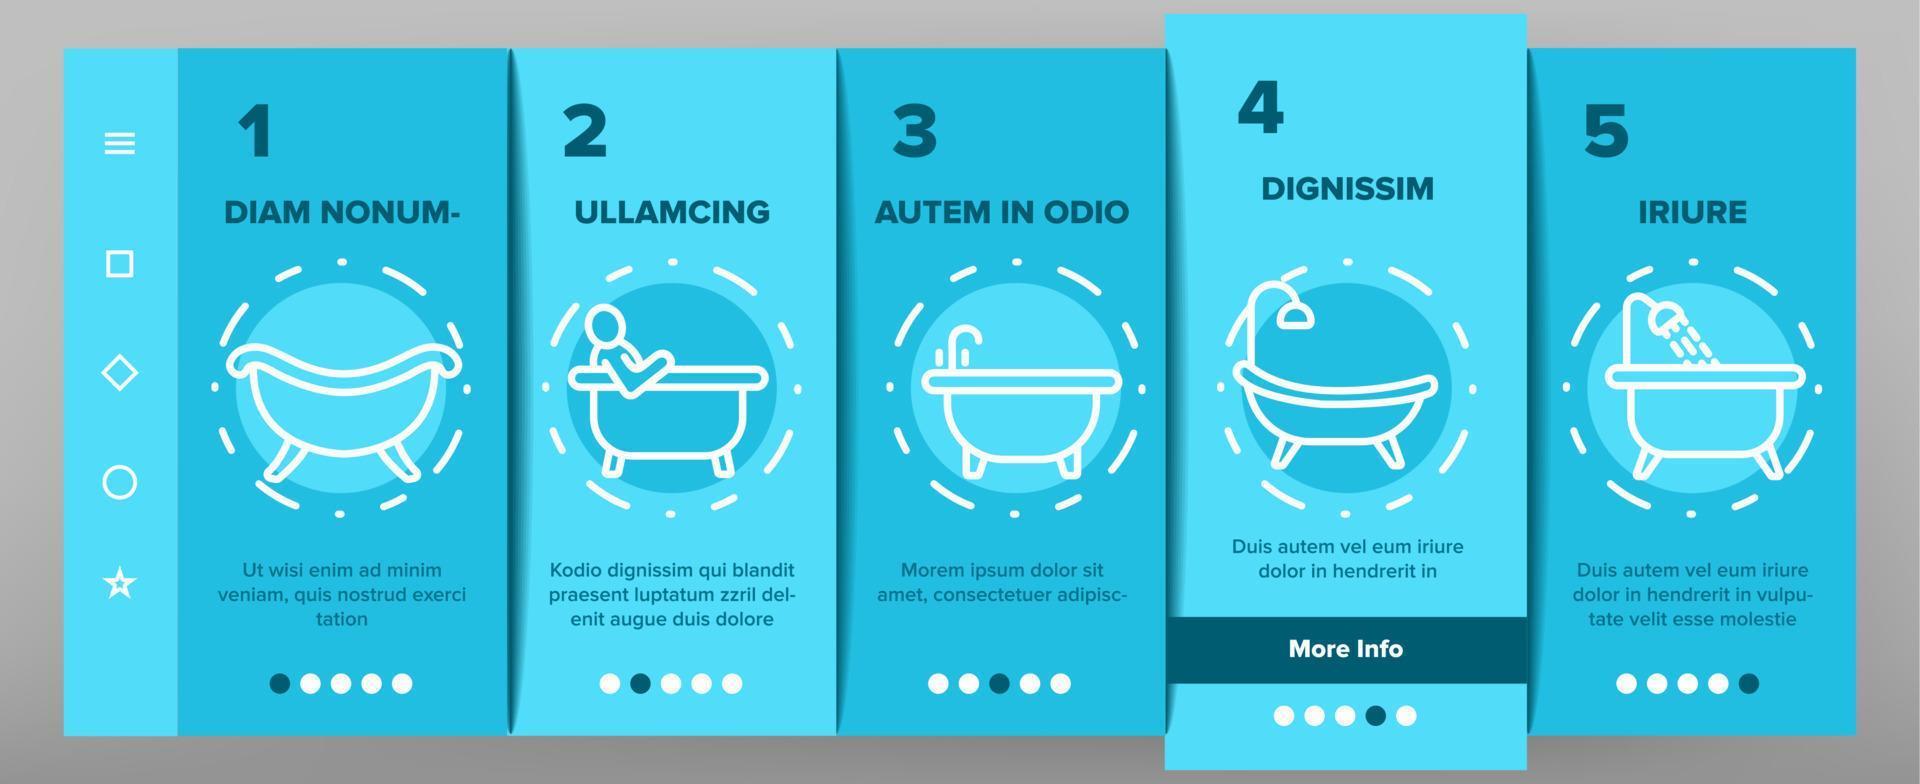 Onboarding-Symbole für Badewanne und Dusche setzen Vektor